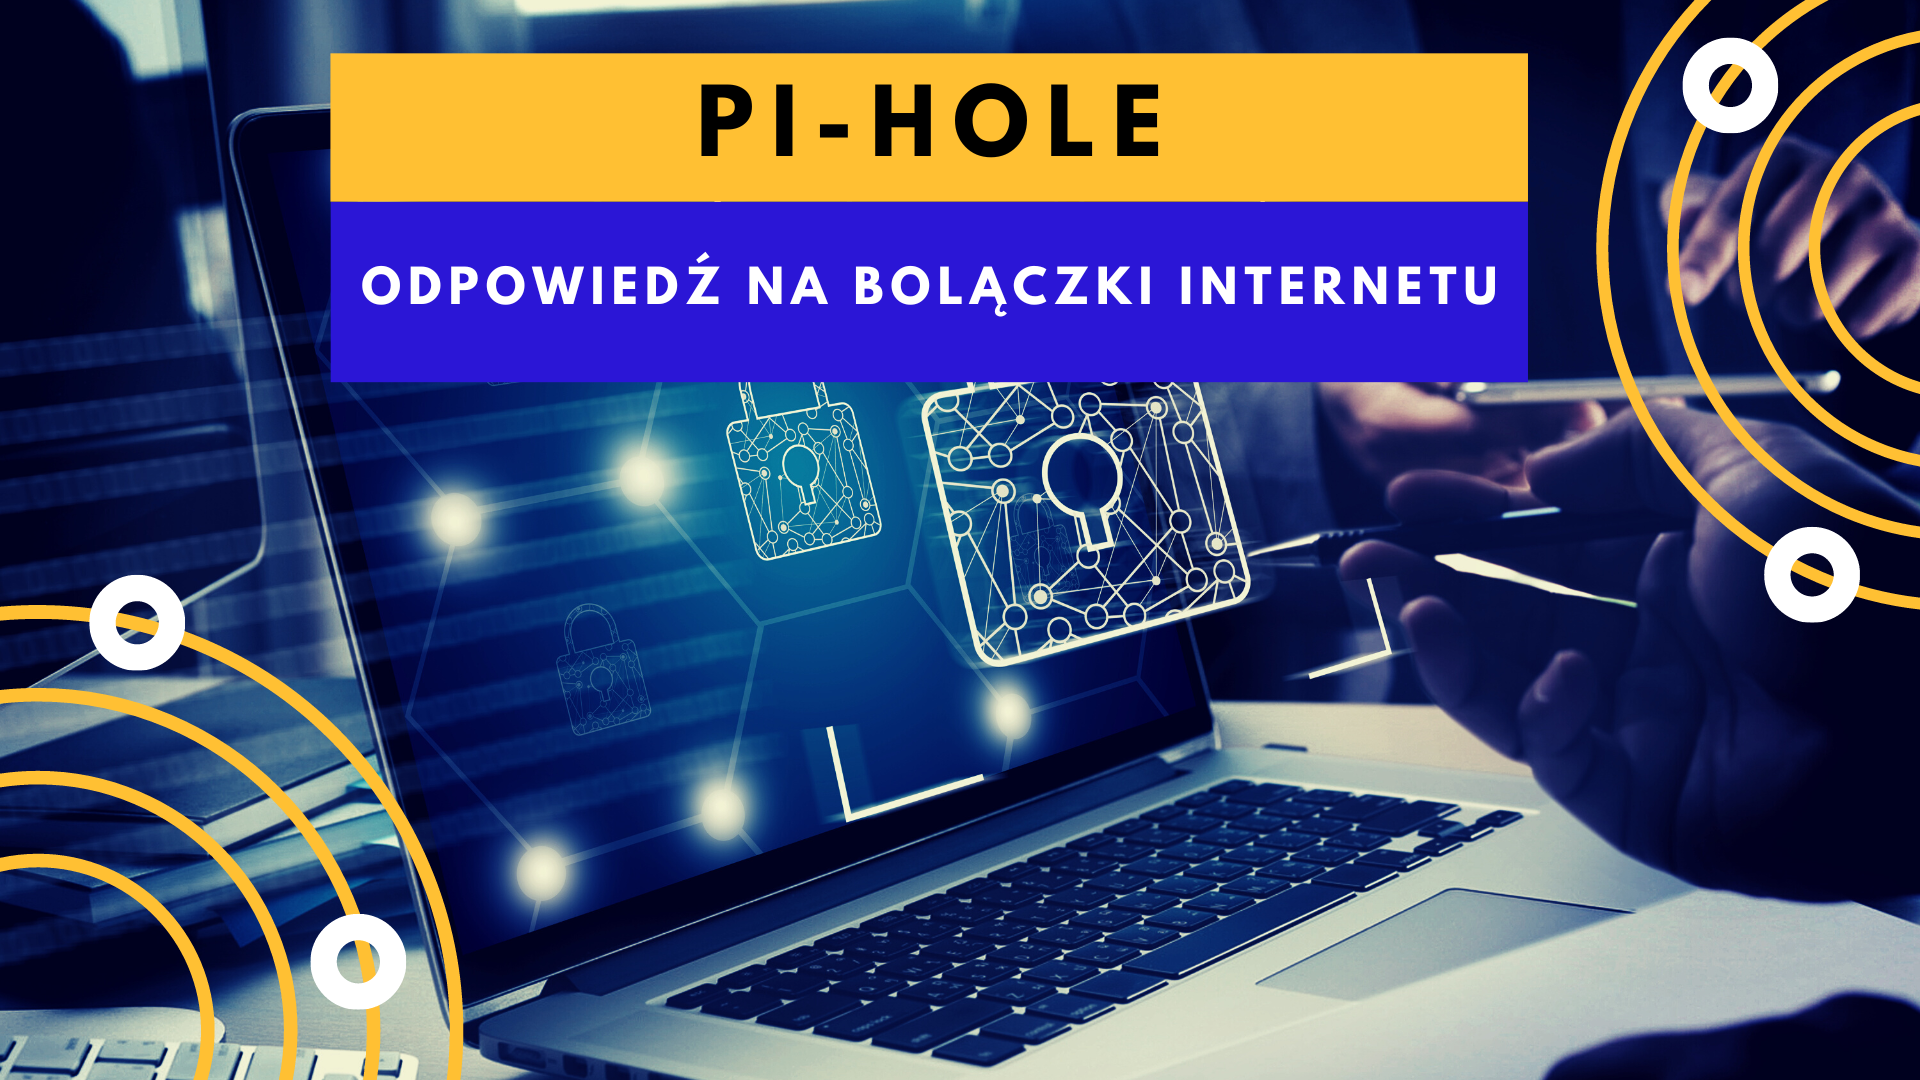 Pi-hole